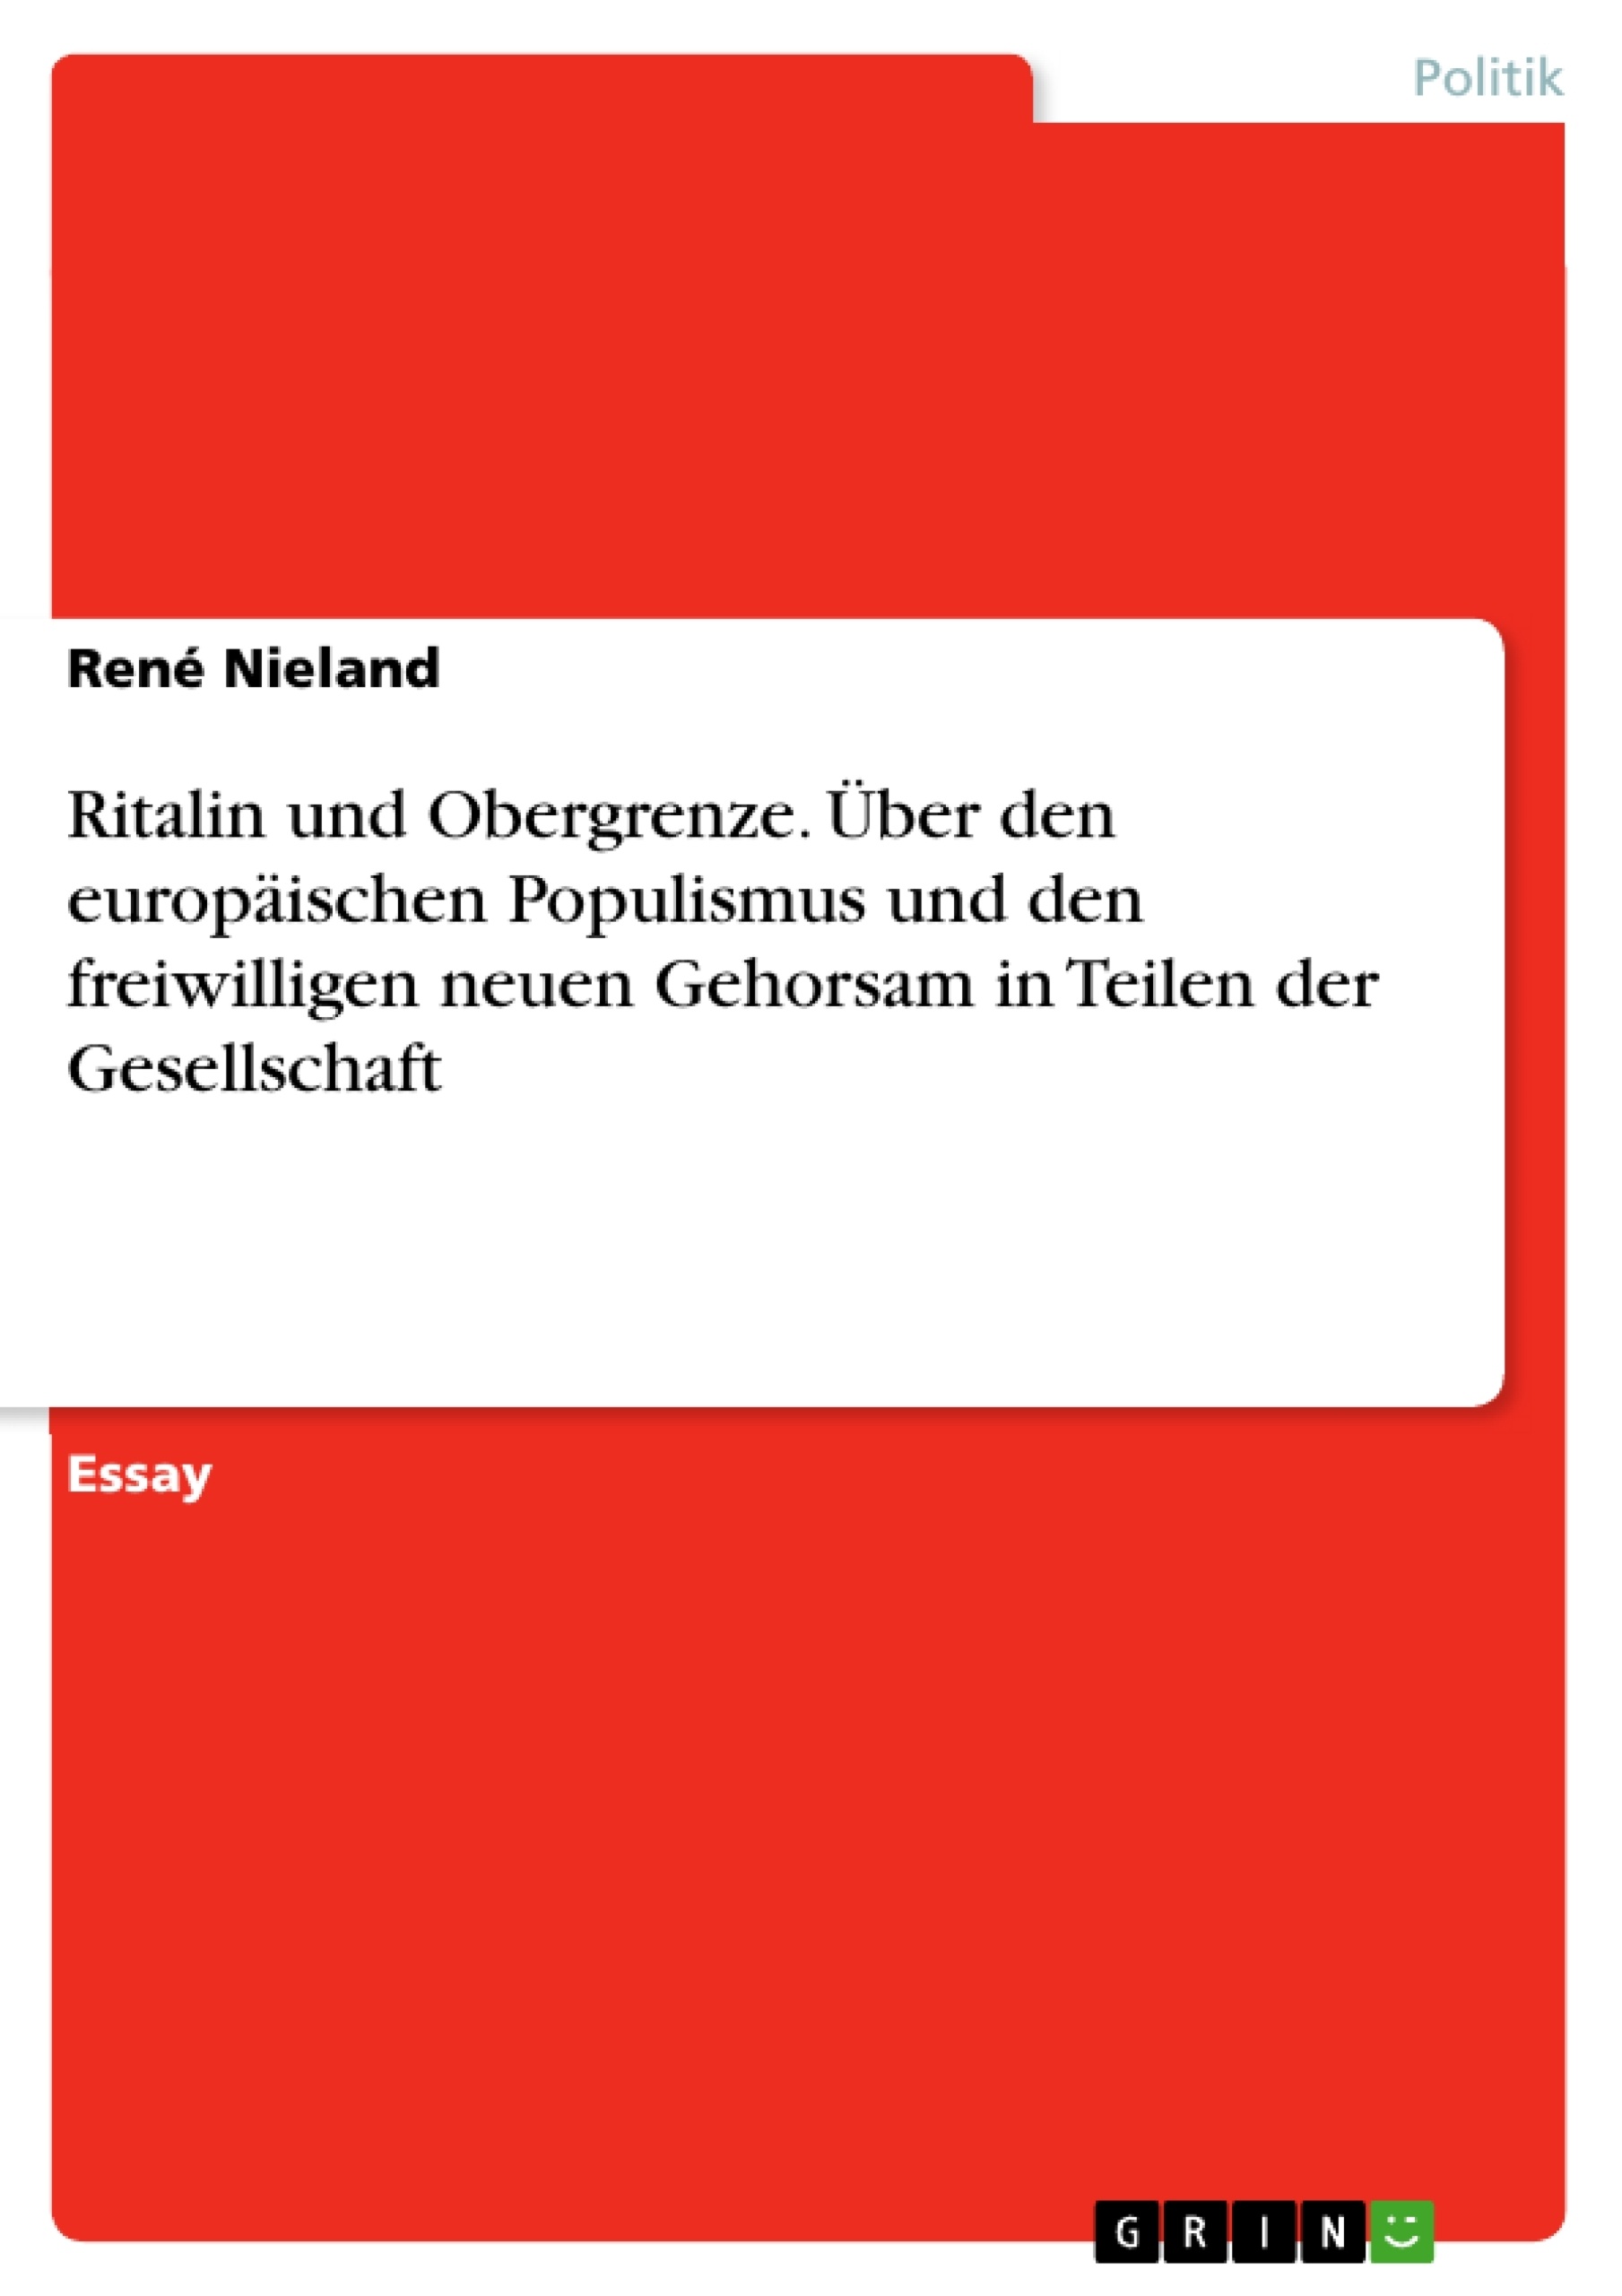 Título: Ritalin und Obergrenze. Über den europäischen Populismus und den freiwilligen neuen Gehorsam in Teilen der Gesellschaft